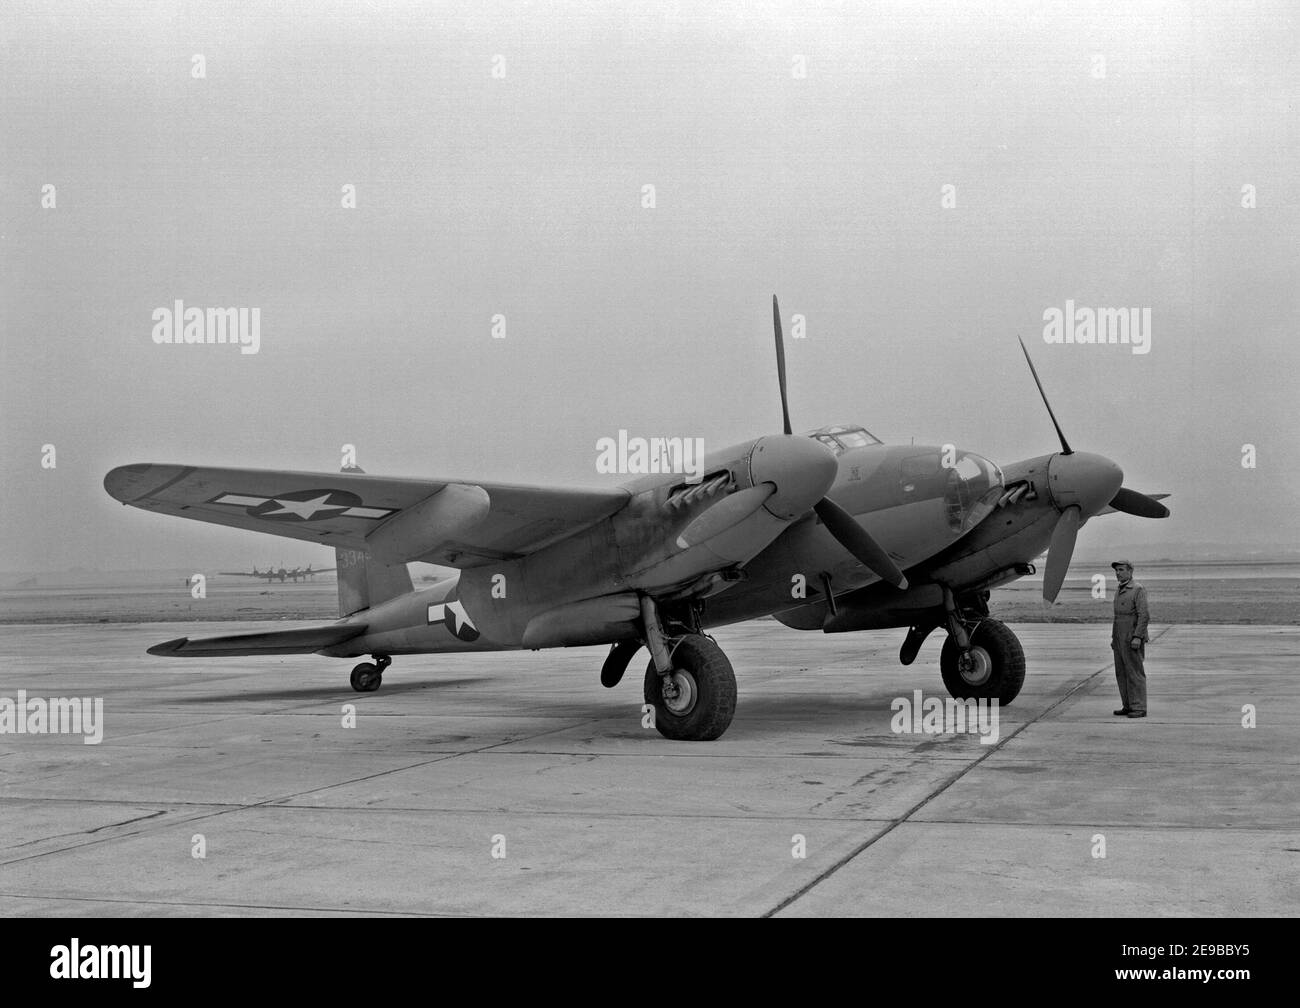 Una zanzara dell'Esercito degli Stati Uniti De Havilland Canada che è stata volata al Comitato consultivo Nazionale degli Stati Uniti per l'Aeronautica (NACA) Langley Research Center, Virginia (USA), dal pilota di prova Bill Gray durante gli studi di stabilità longitudinale e di controllo dell'aeromobile nel 1945. Questo velivolo era originariamente una zanzara B Mk XX, la versione canadese del bombardiere Mosquito B Mk IV. 145 furono costruiti, di cui 40 furono convertiti in velivoli da ricognizione fotografica per la USAAF, che designò gli aerei F-8. 4 gennaio 1945 Foto Stock